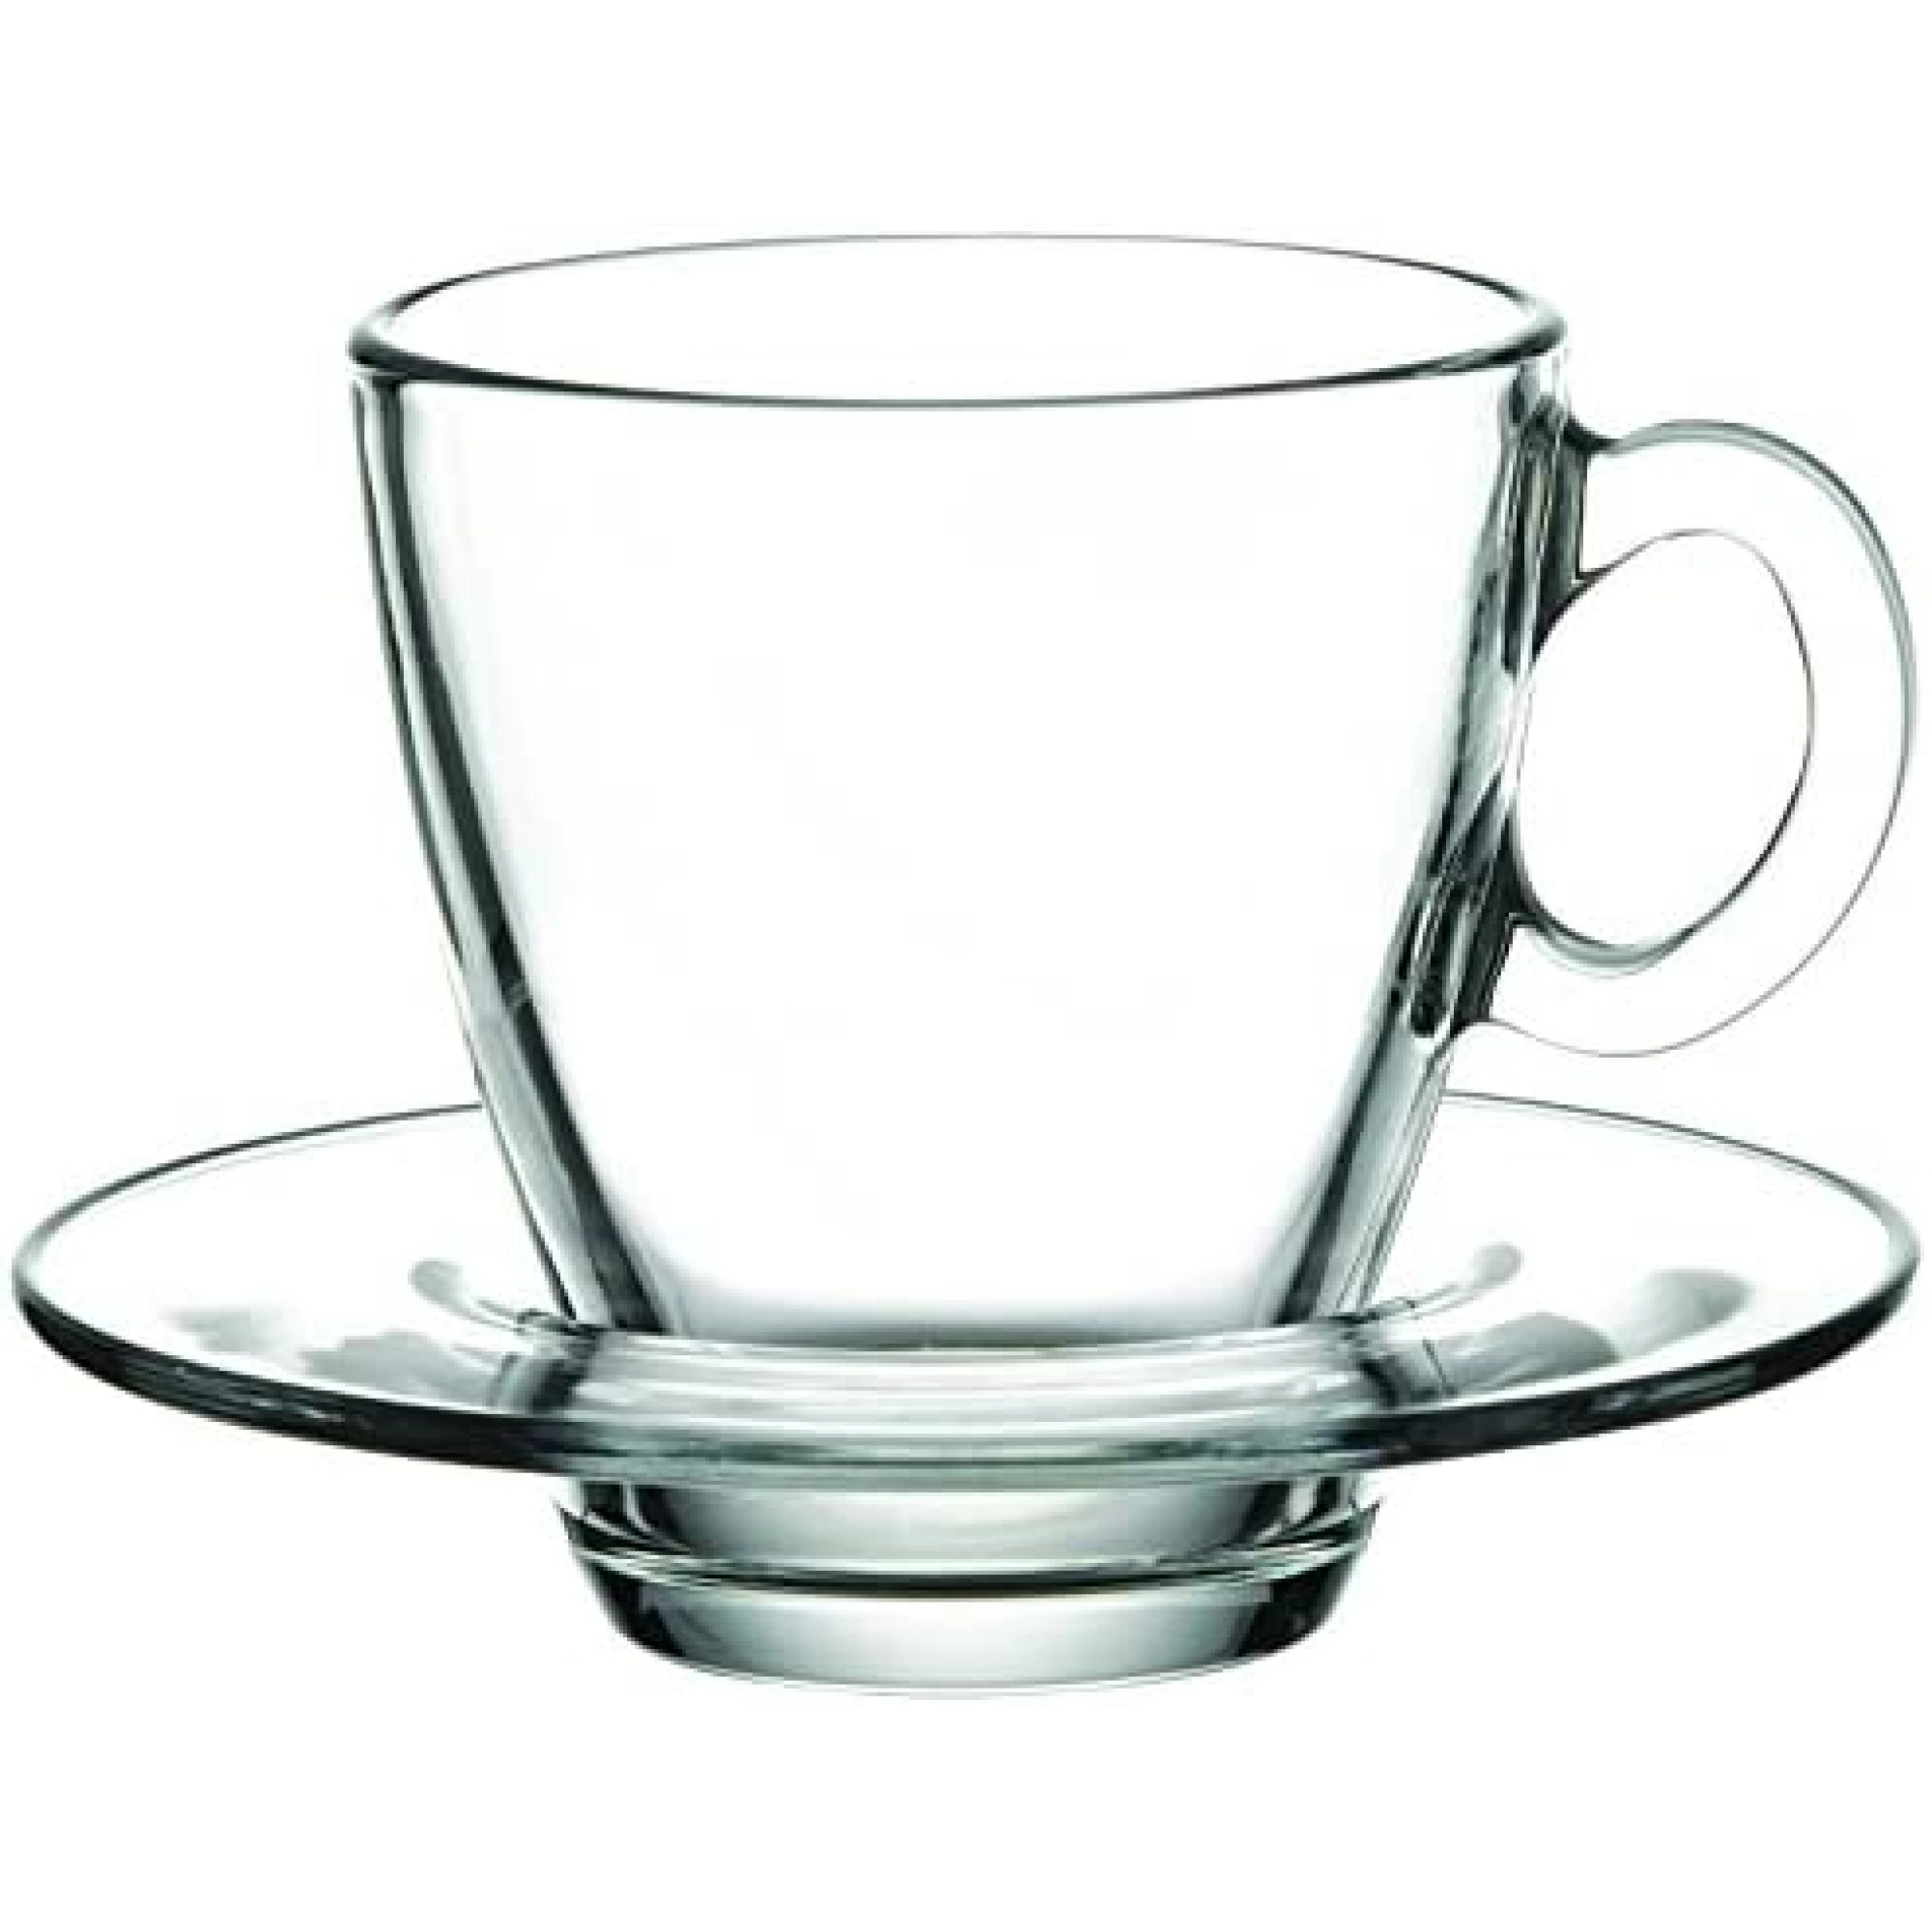 P cup. Аква чашка 70мл.+блюдце 6шт.95756bt. Чашка "Аква", 215 мл. Чашка Pasabahce Aqua, 72 мл. Чайный сервиз Pasabahce Aqua.